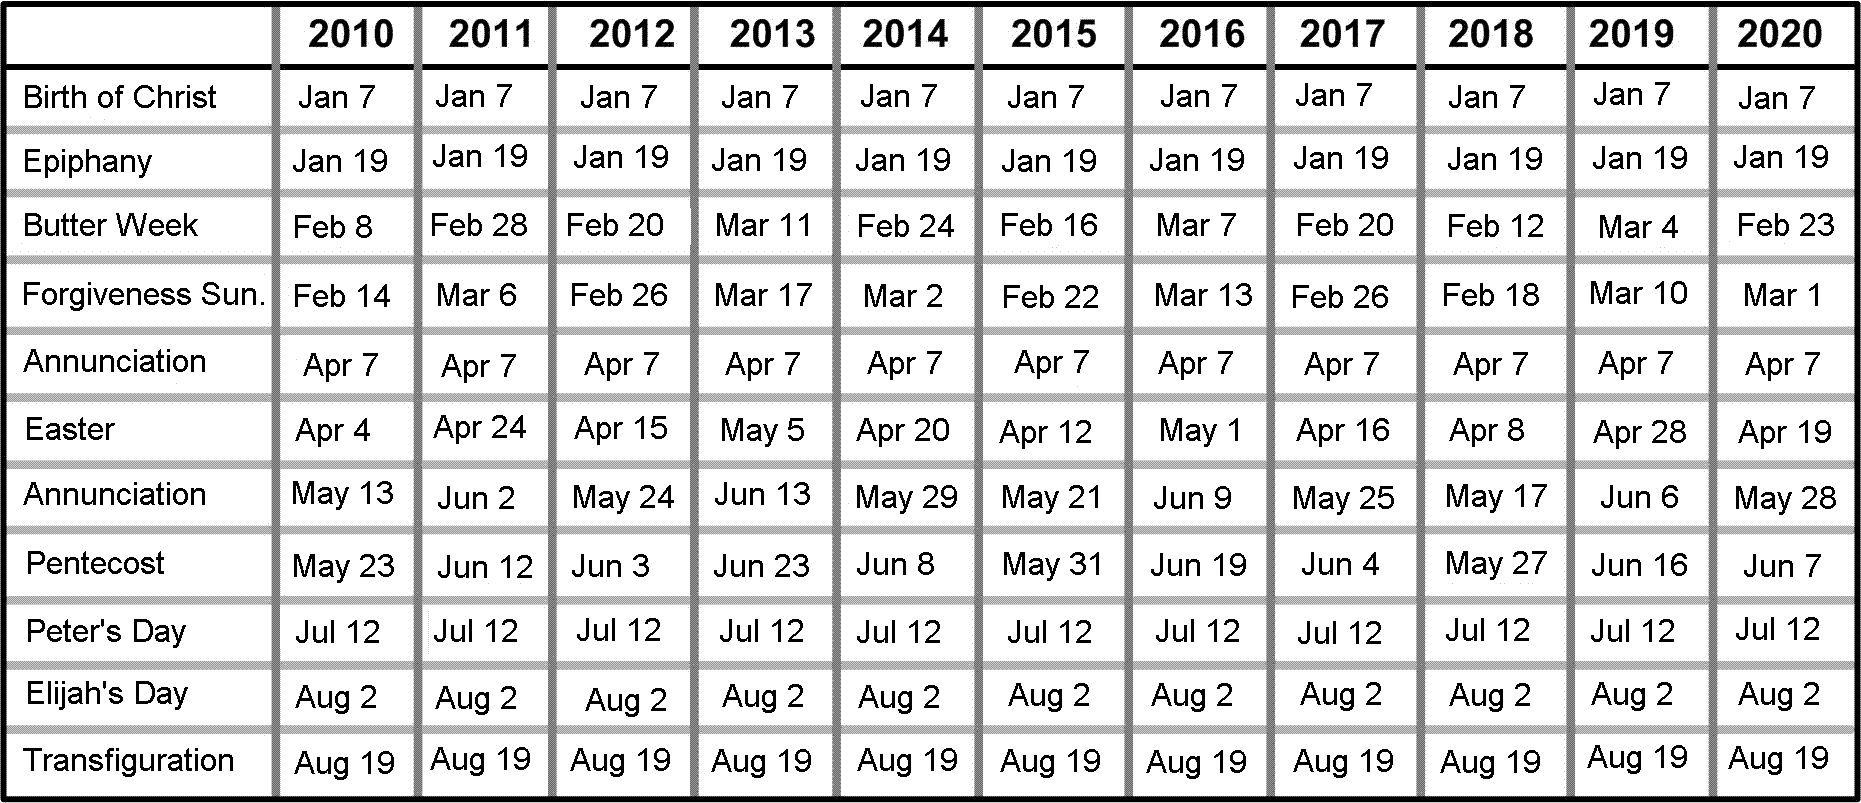 Пасха в 1974 году. Числа Пасхи по годам. Даты Пасхи таблица. Календарь Пасхи на несколько лет. Даты Пасхи по годам с 2000 года.